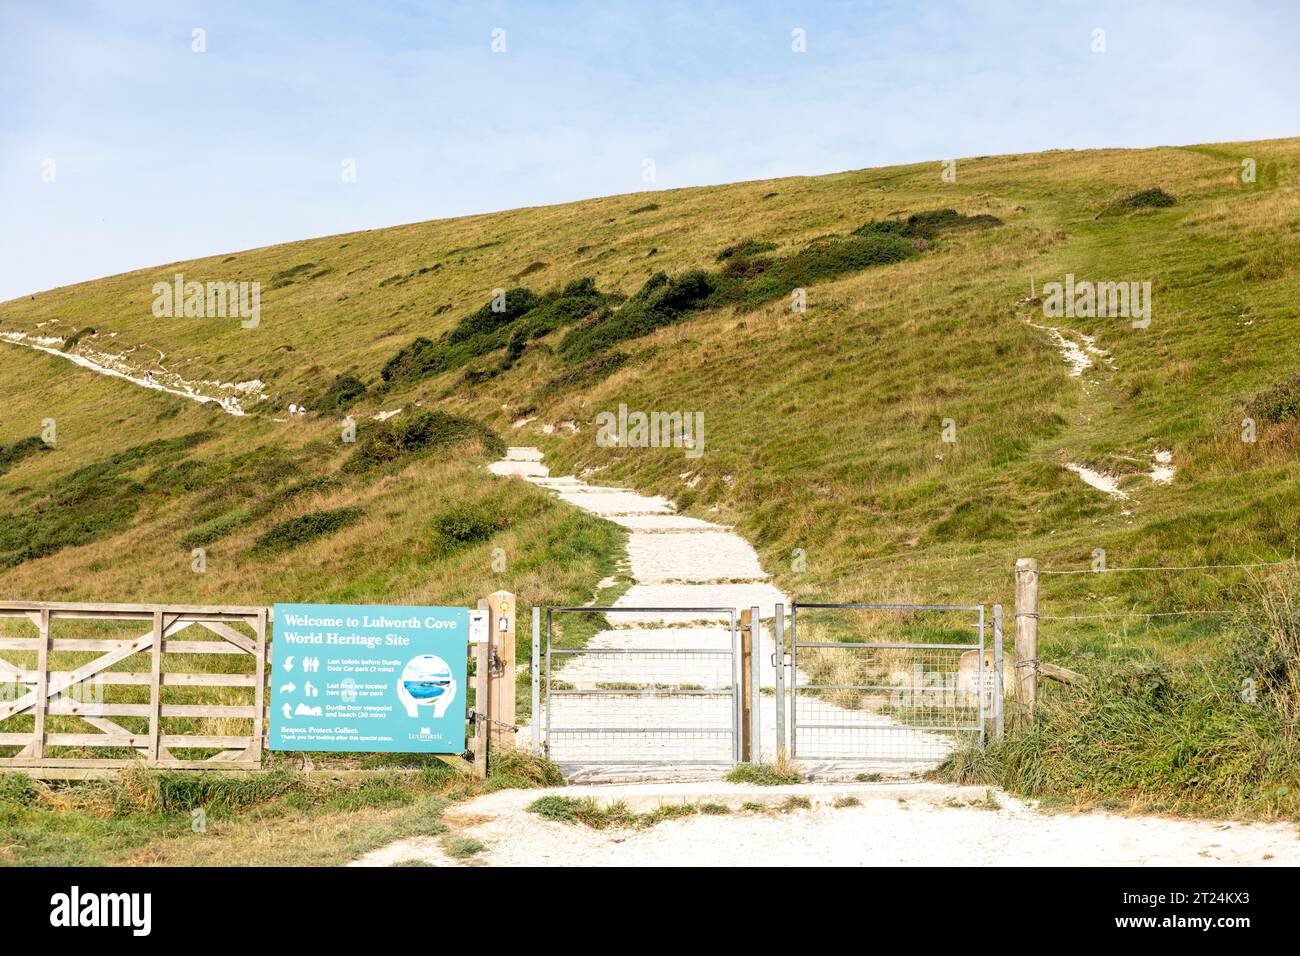 Panneau de bienvenue du site du patrimoine mondial de Lulworth Cove et chemin pour marcher jusqu'à l'arche de calcaire naturel de Durdle Door, Dorset, Angleterre, Royaume-Uni, septembre 2023 Banque D'Images